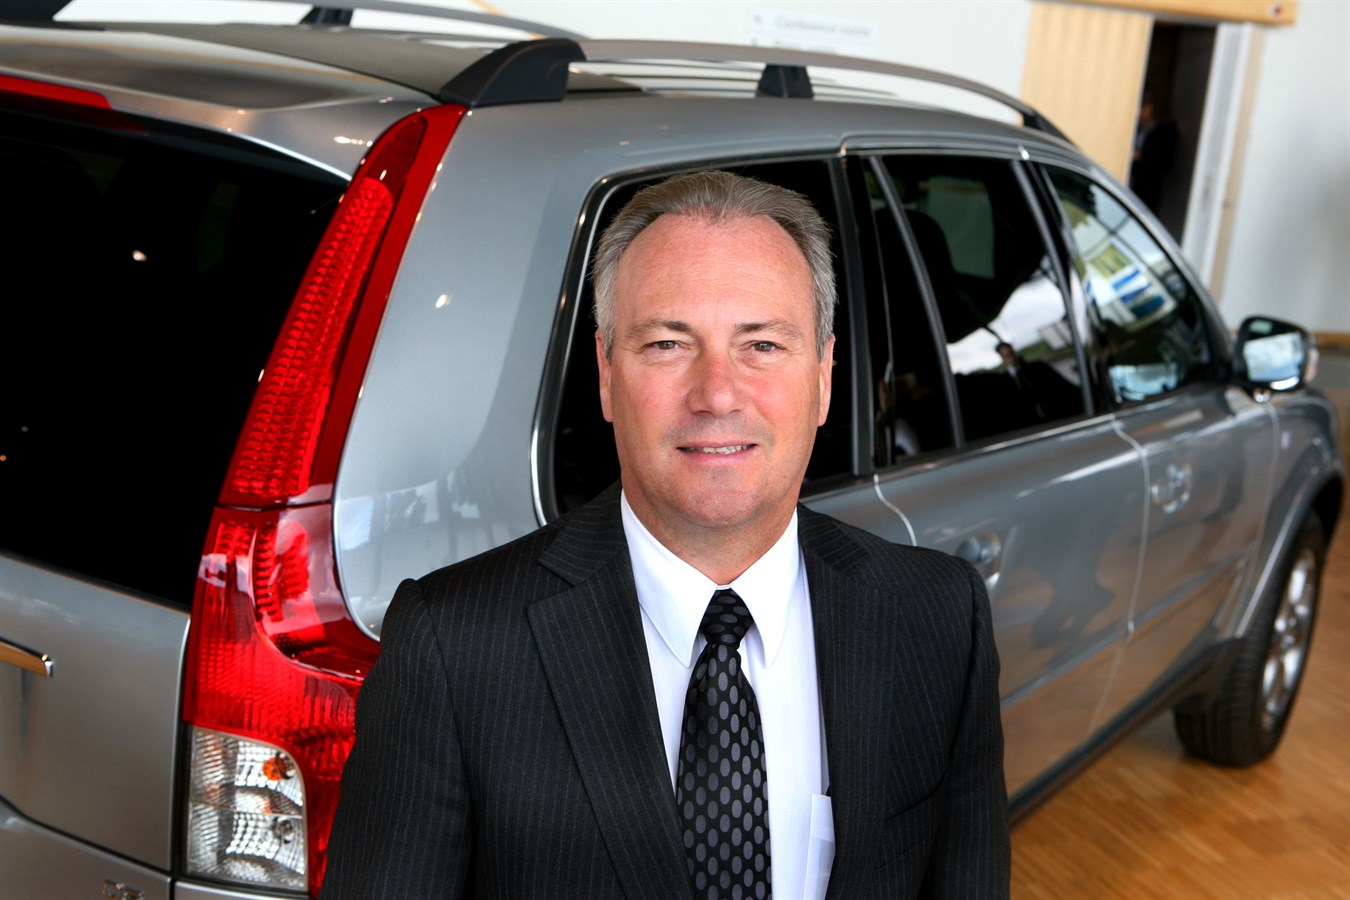 Stephen Odell, Presidente e CEO di Volvo Car Corporation dal 1° ottobre 2008